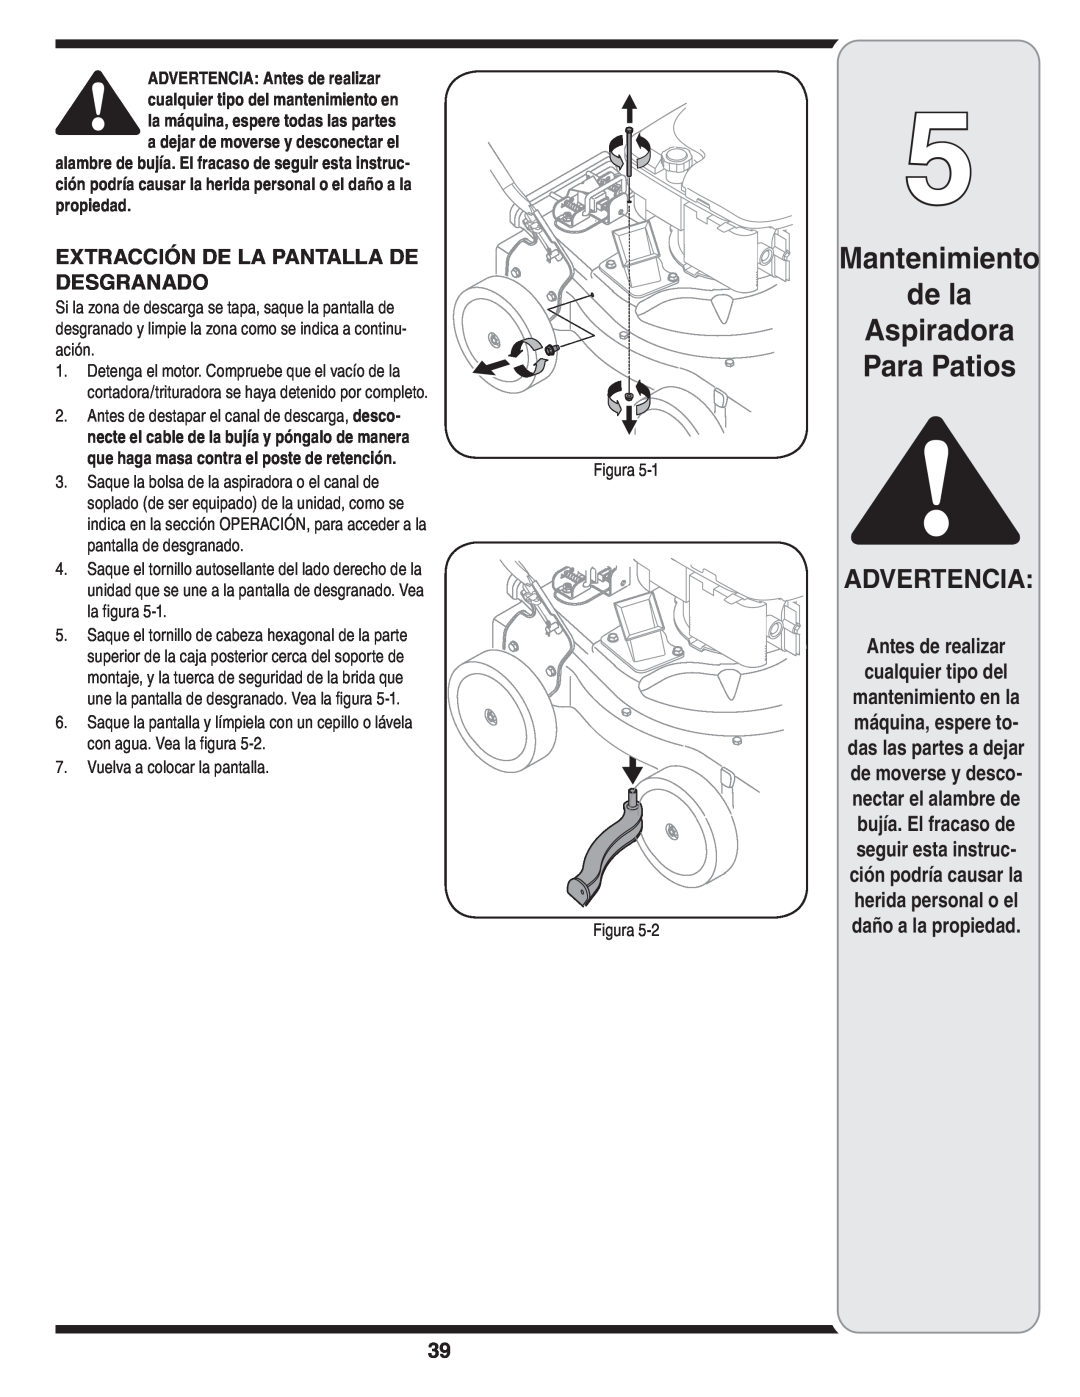 MTD Series 020 warranty Mantenimiento de la Aspiradora Para Patios, Advertencia, Extracción De La Pantalla De Desgranado 